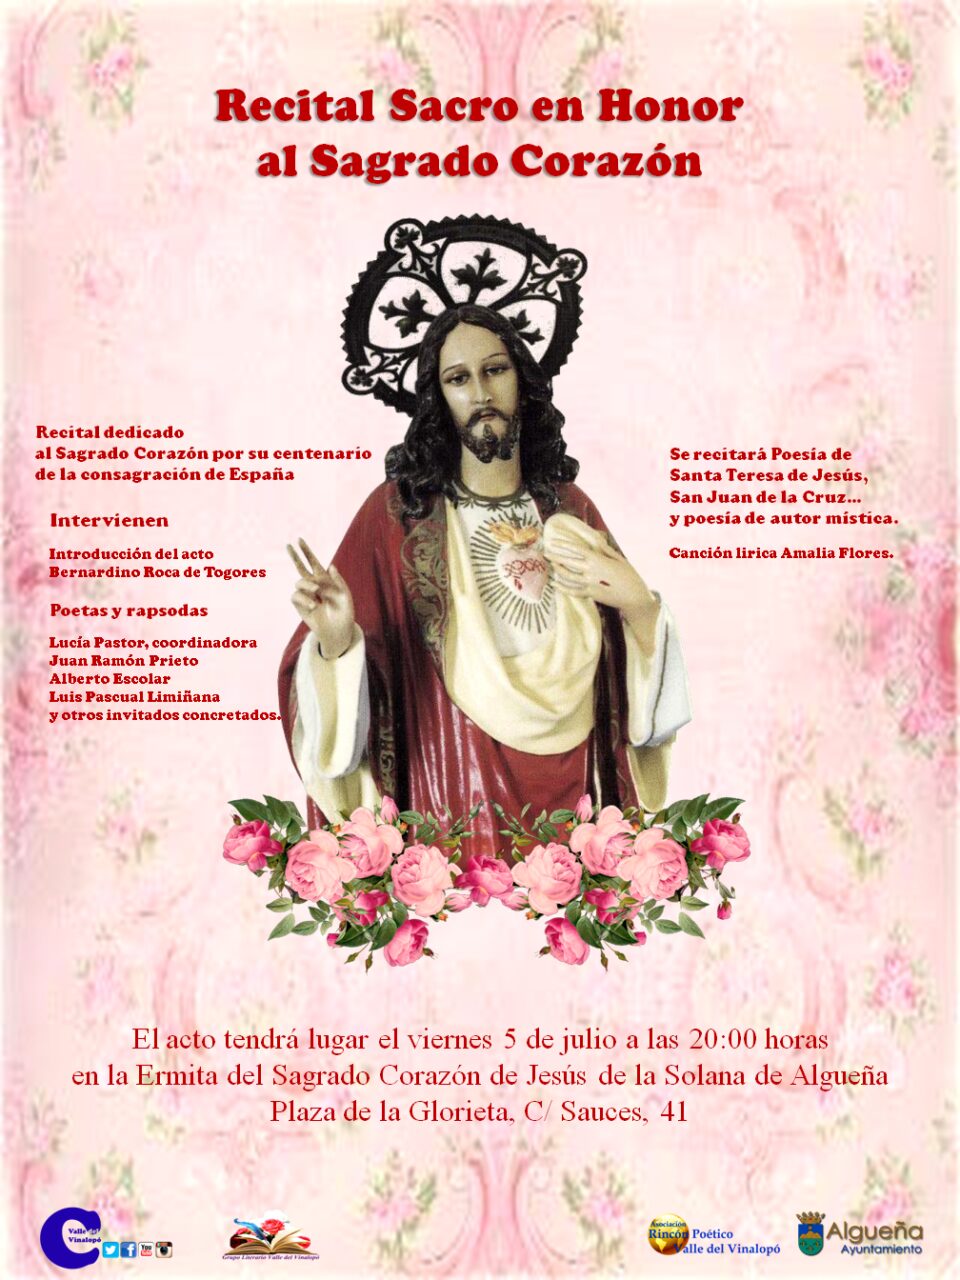 Recital Sacro en honor al Sagrado Corazón; viernes 5 de julio de 2019 a las 20:00 horas en la Ermita de la Solana de Algueña